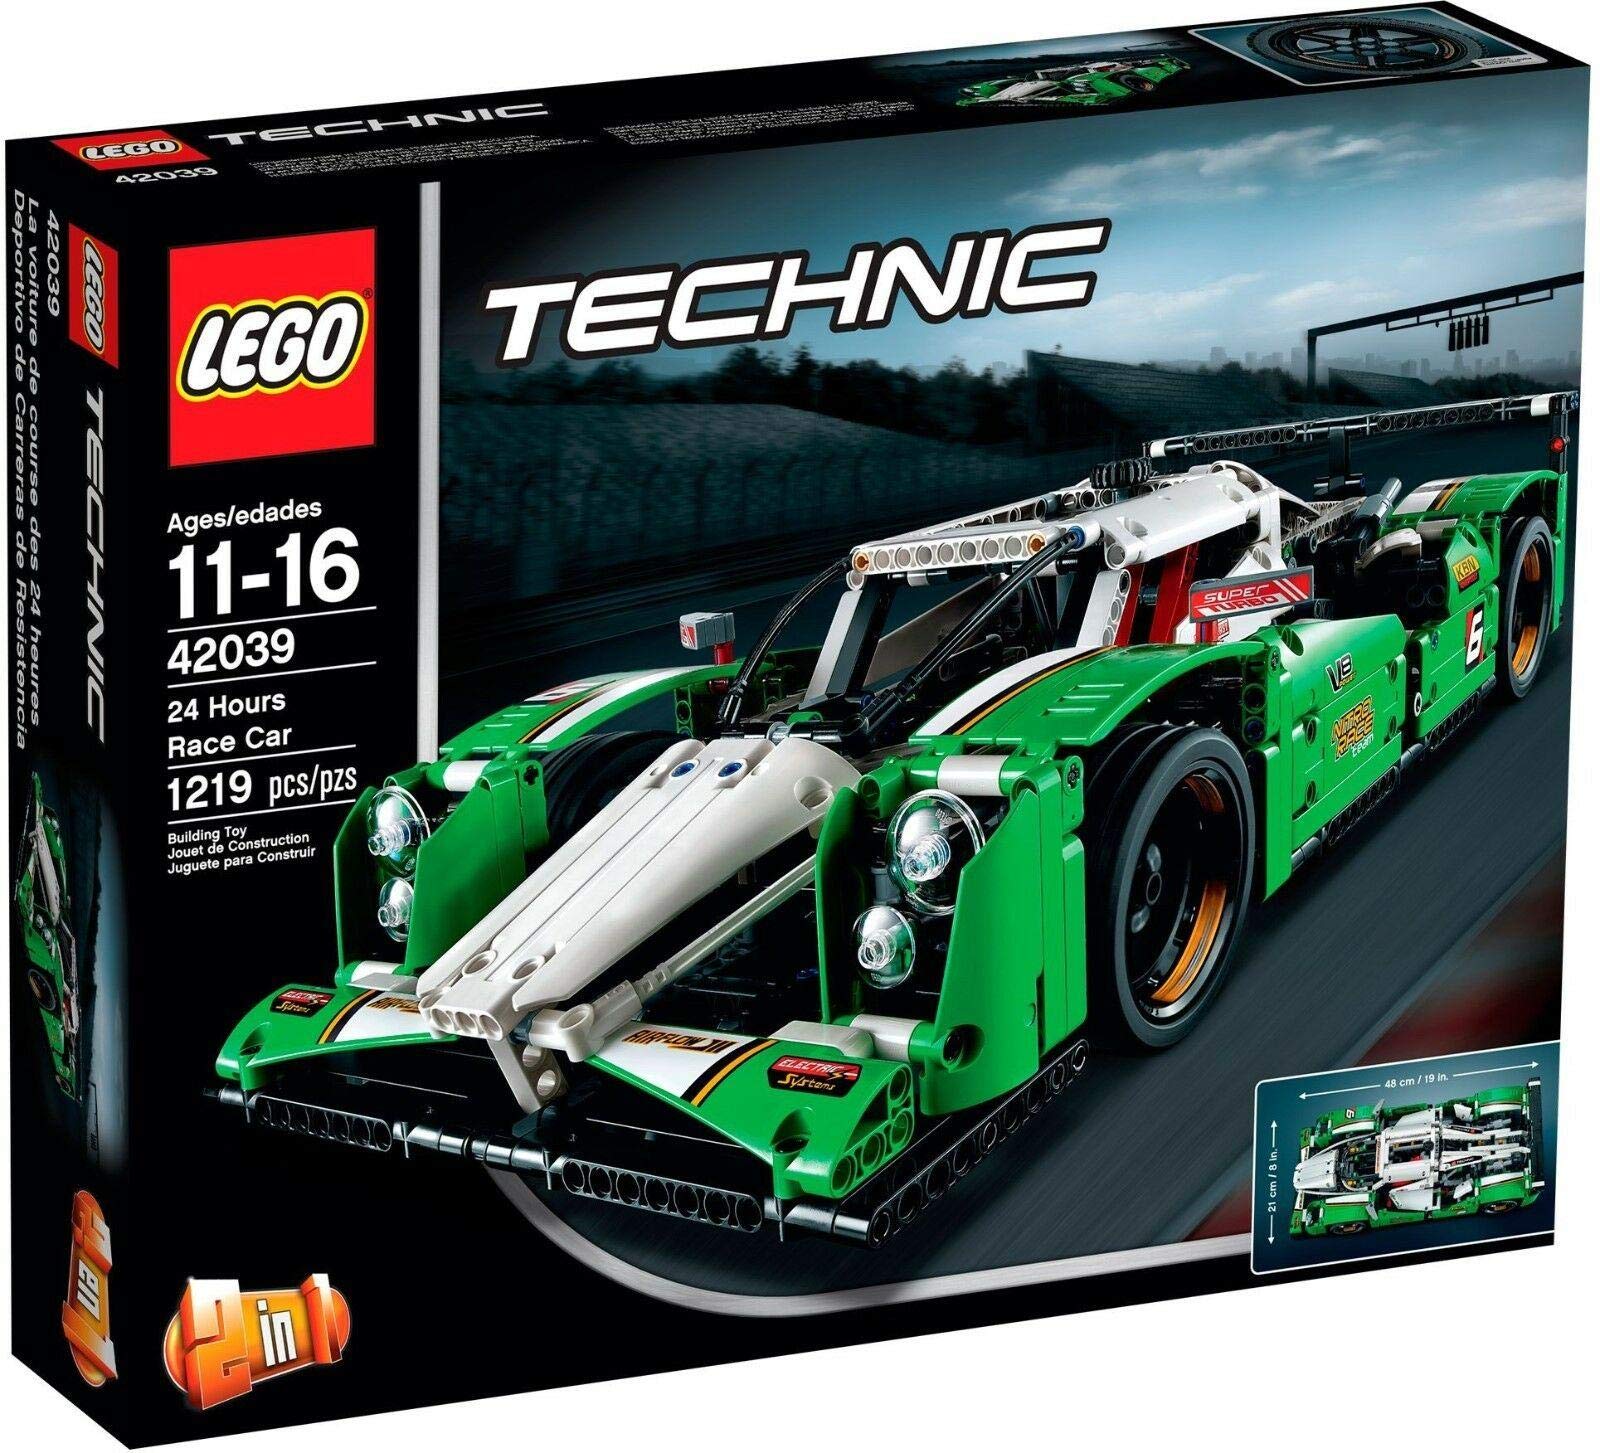 LEGO 耐久レースカー 42039